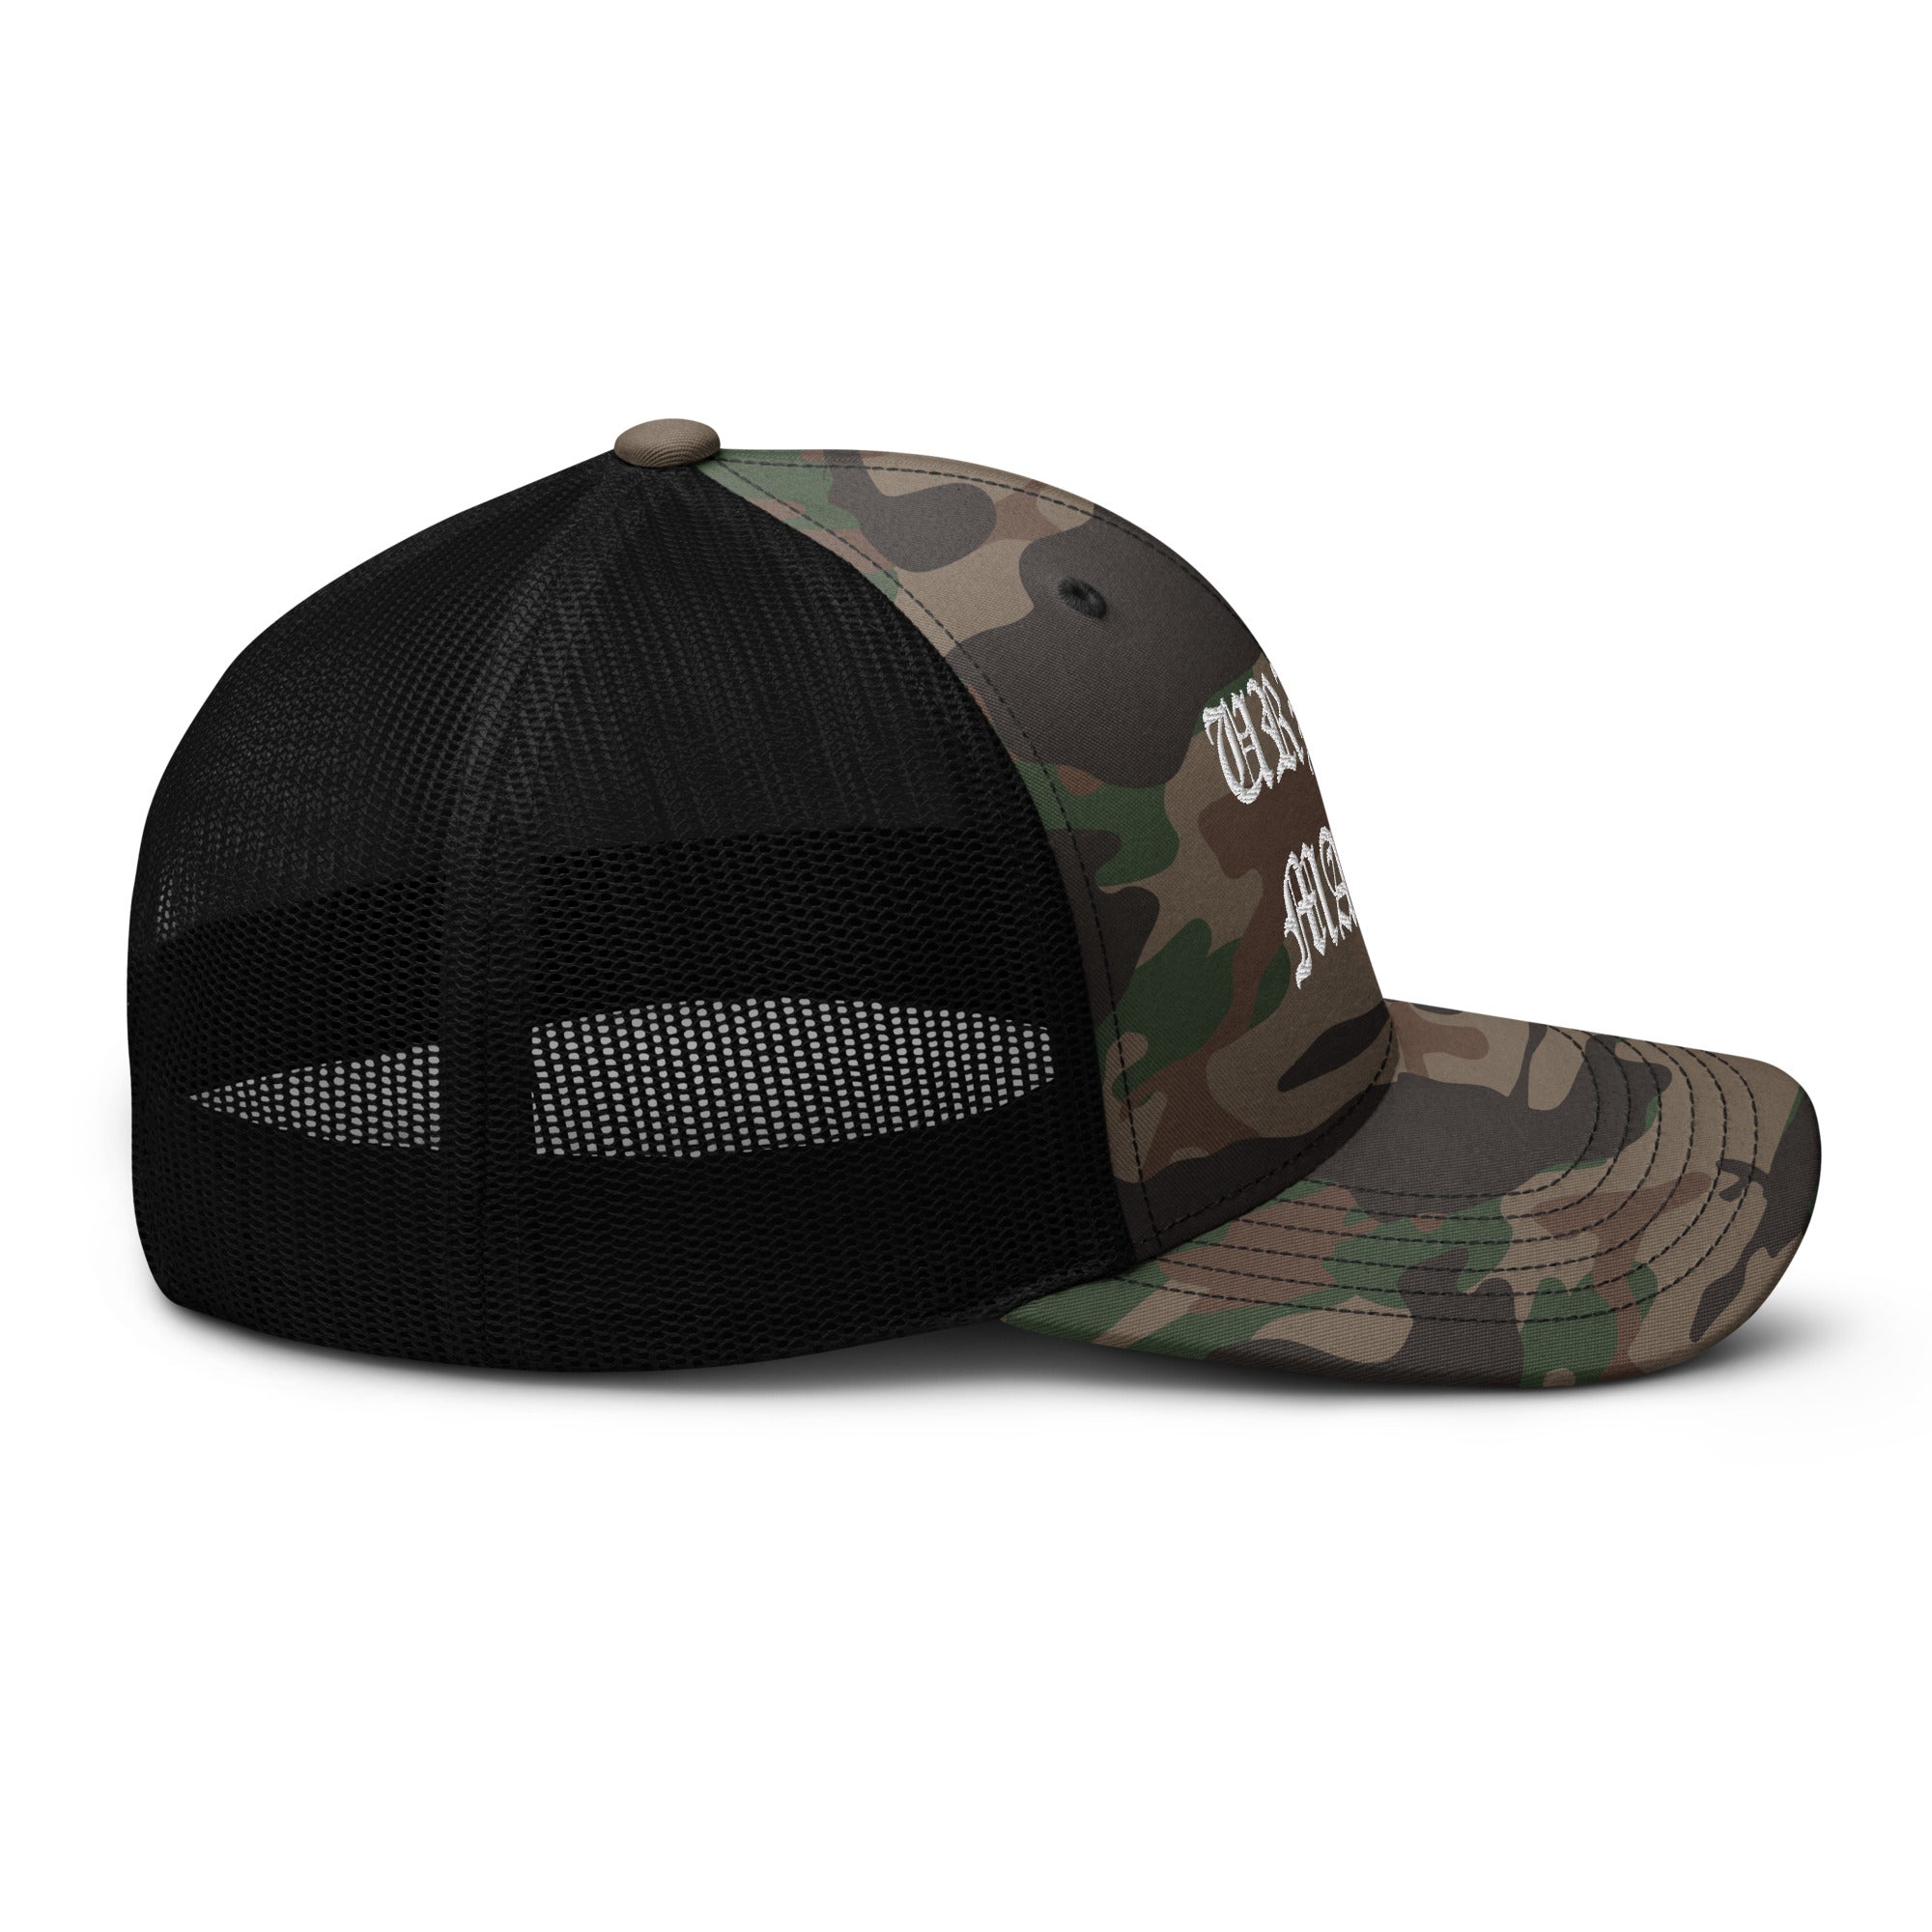 UM Camouflage trucker hat